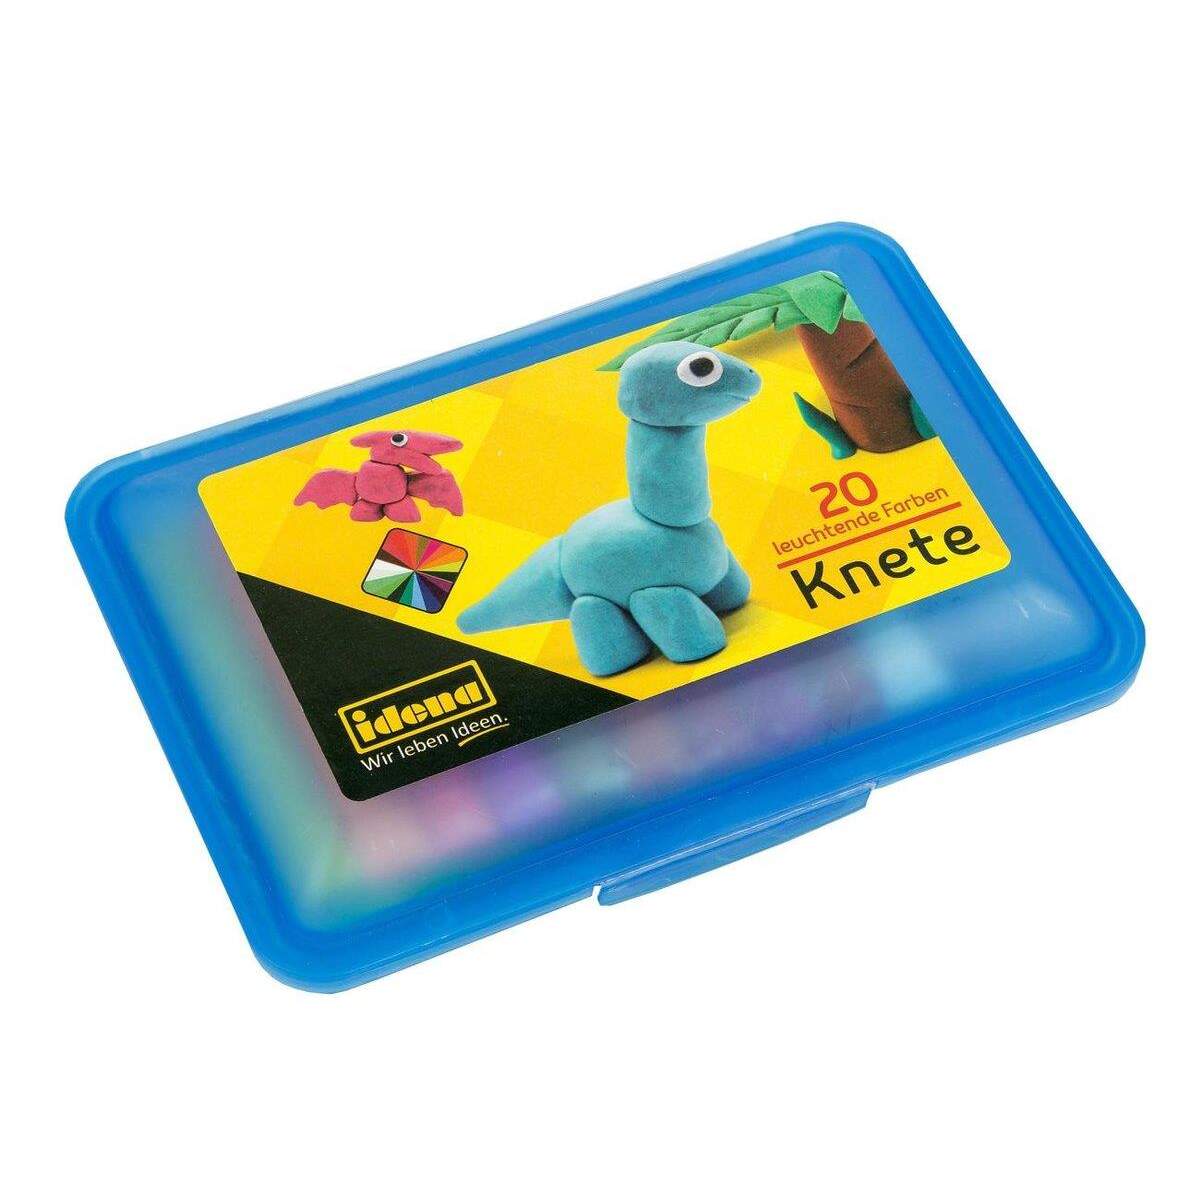 Idena Knete, 20 Stangen/20 Farben, in blauer Box